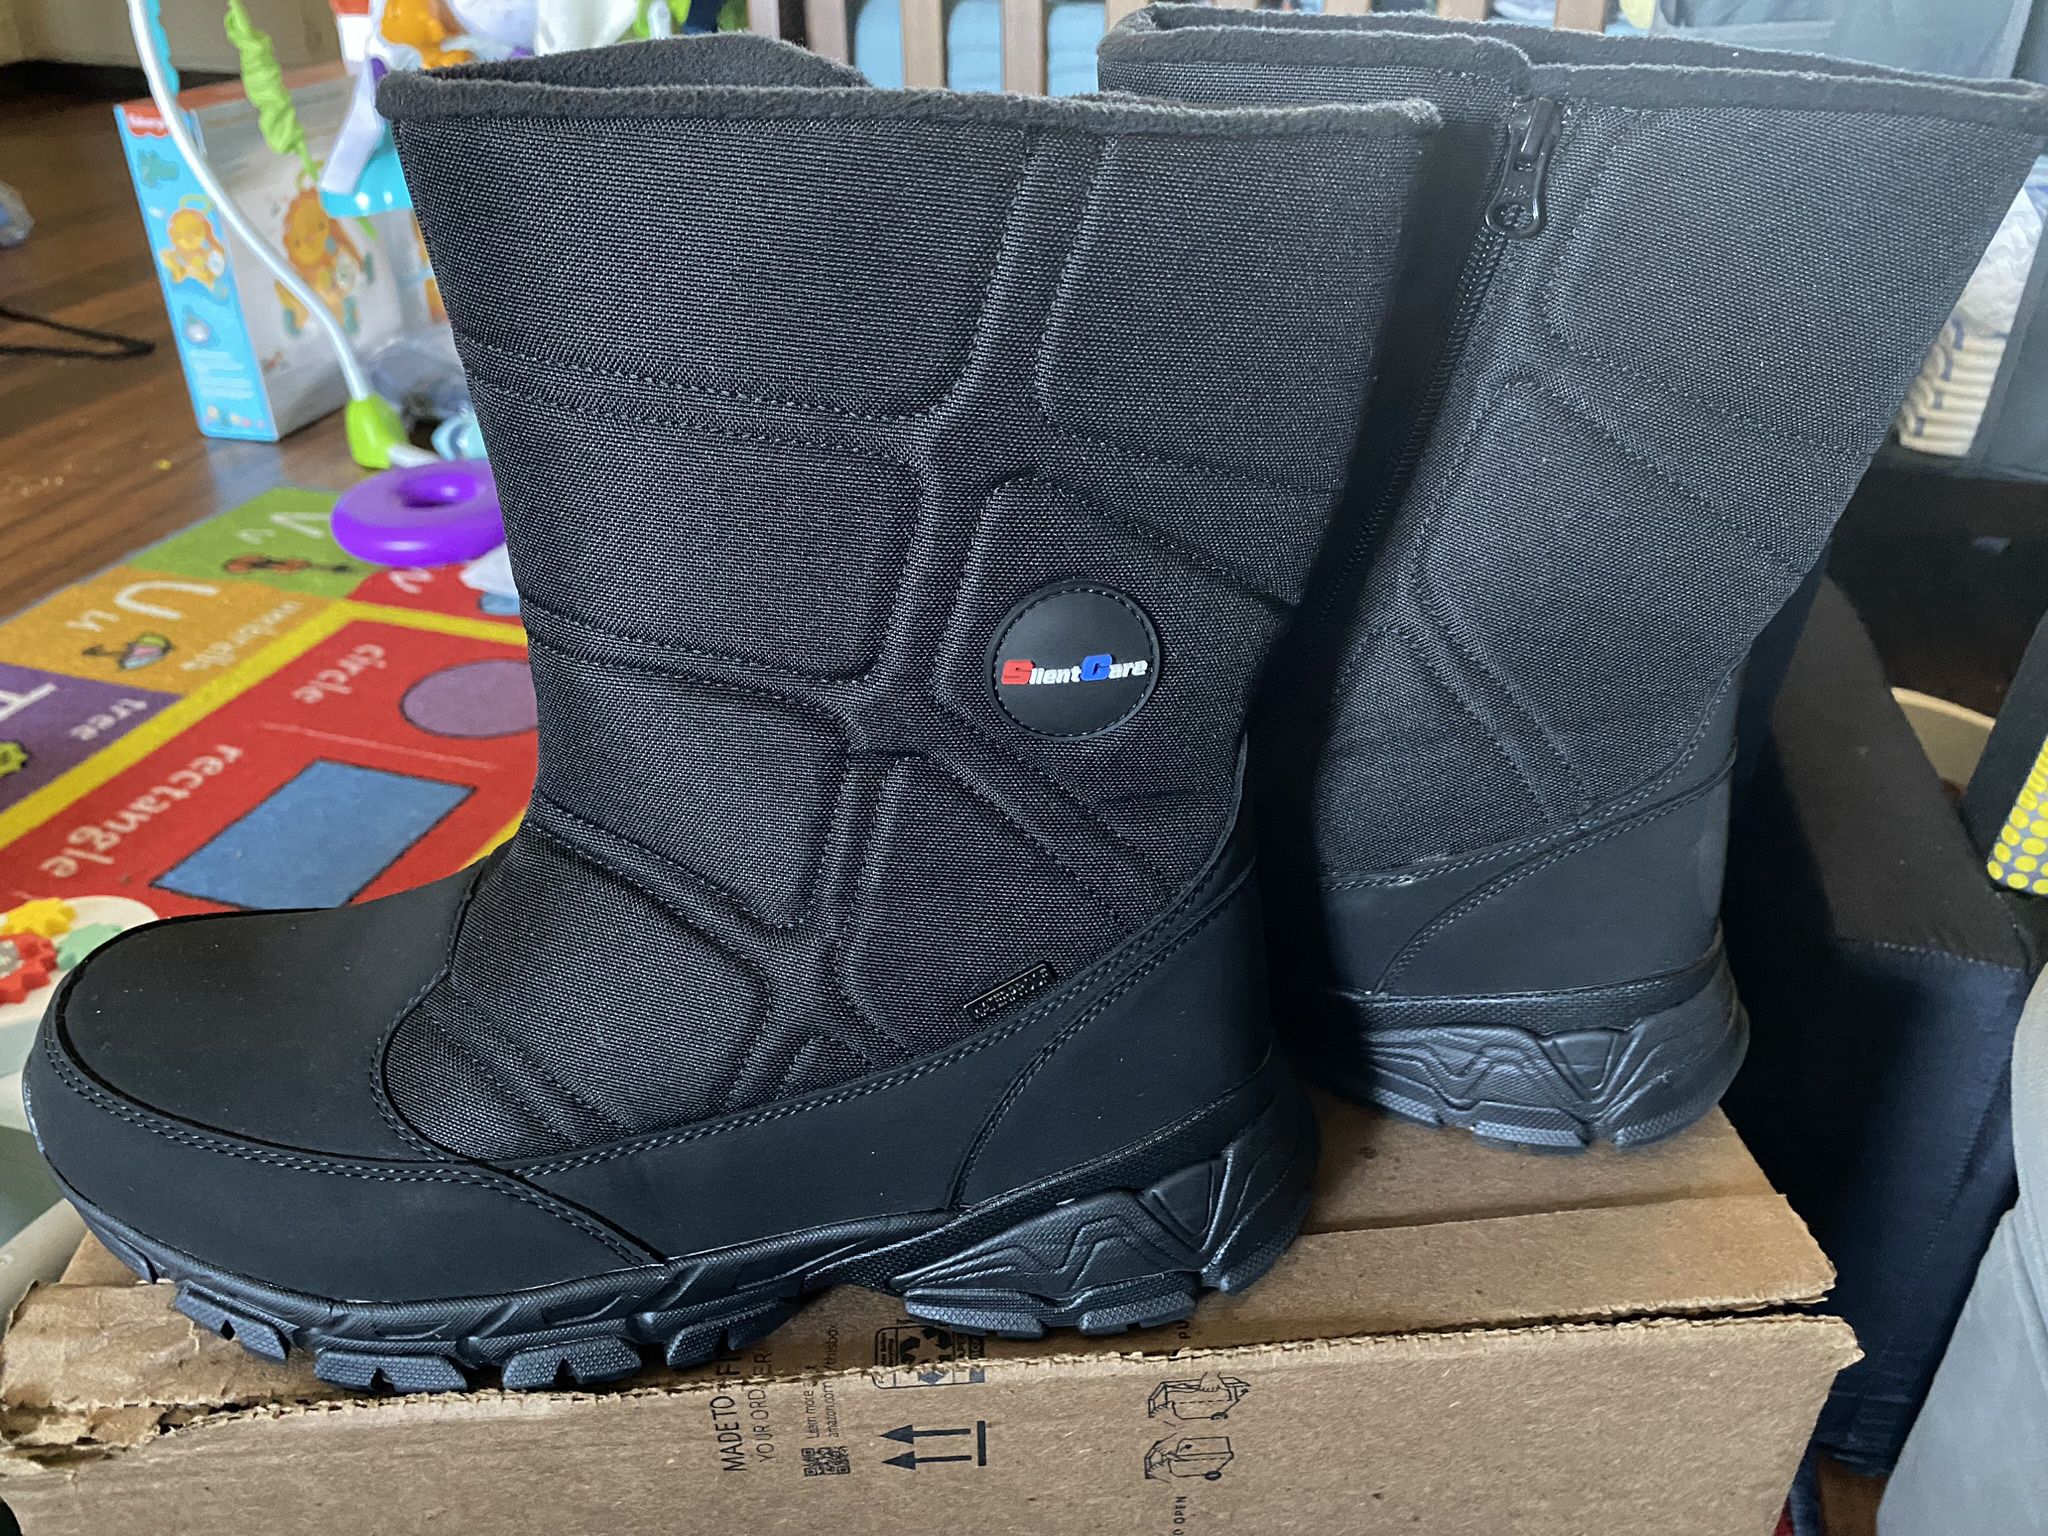 Men’s Size 11 Snow/Rain Boots